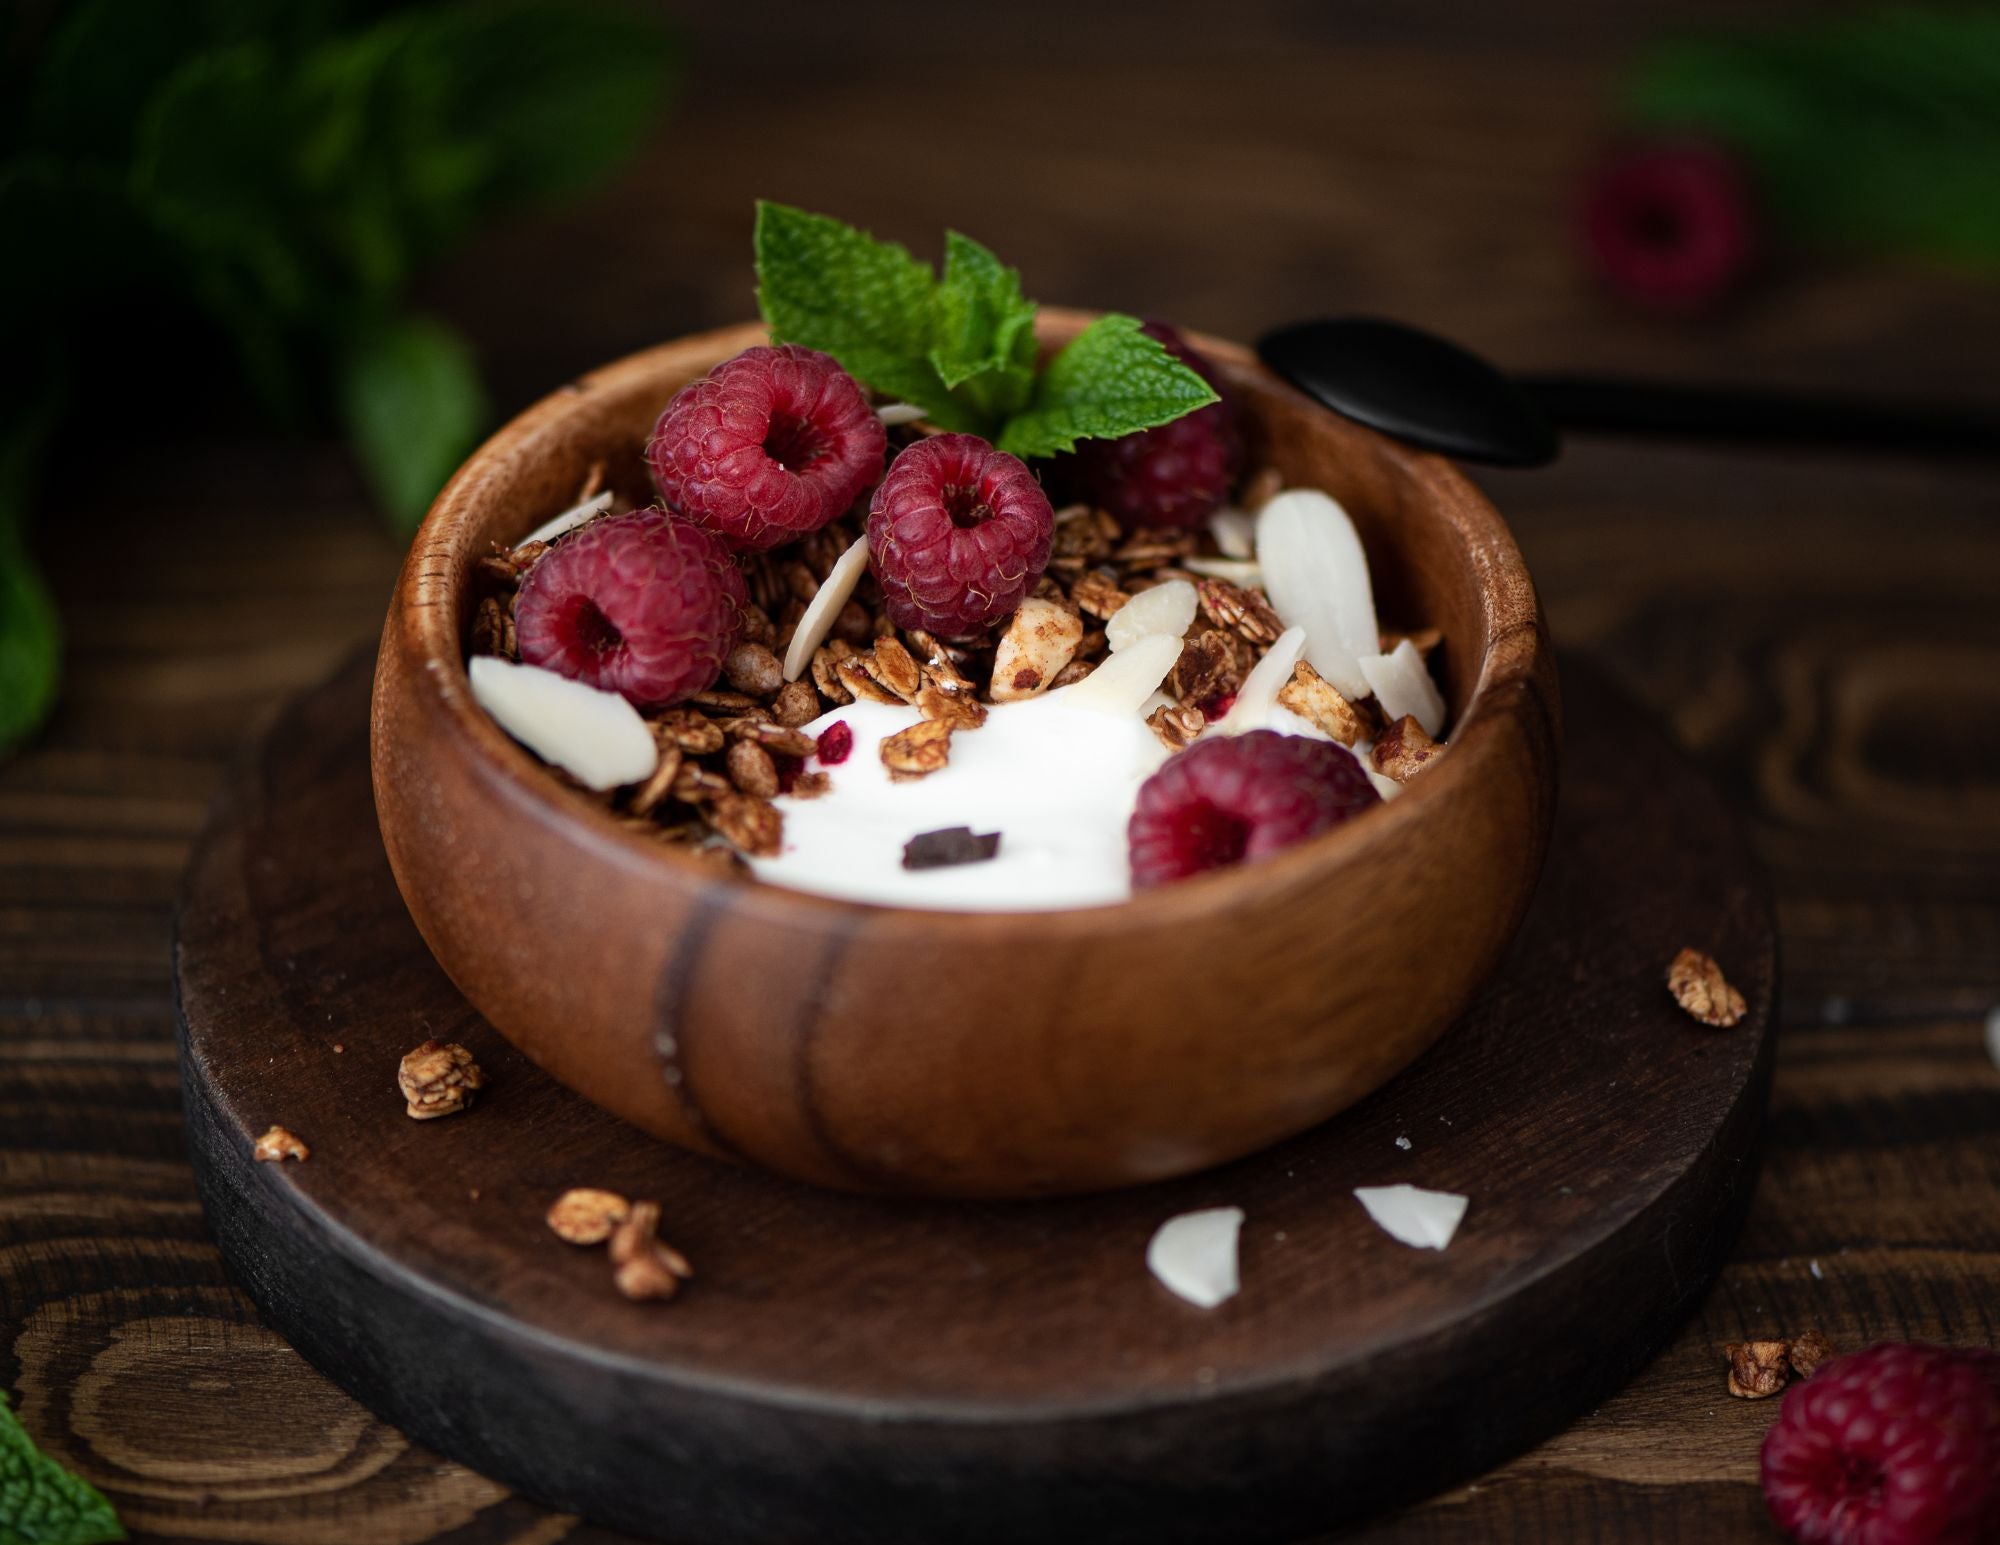 Greek yogurt with raspberries, pumpkin seeds